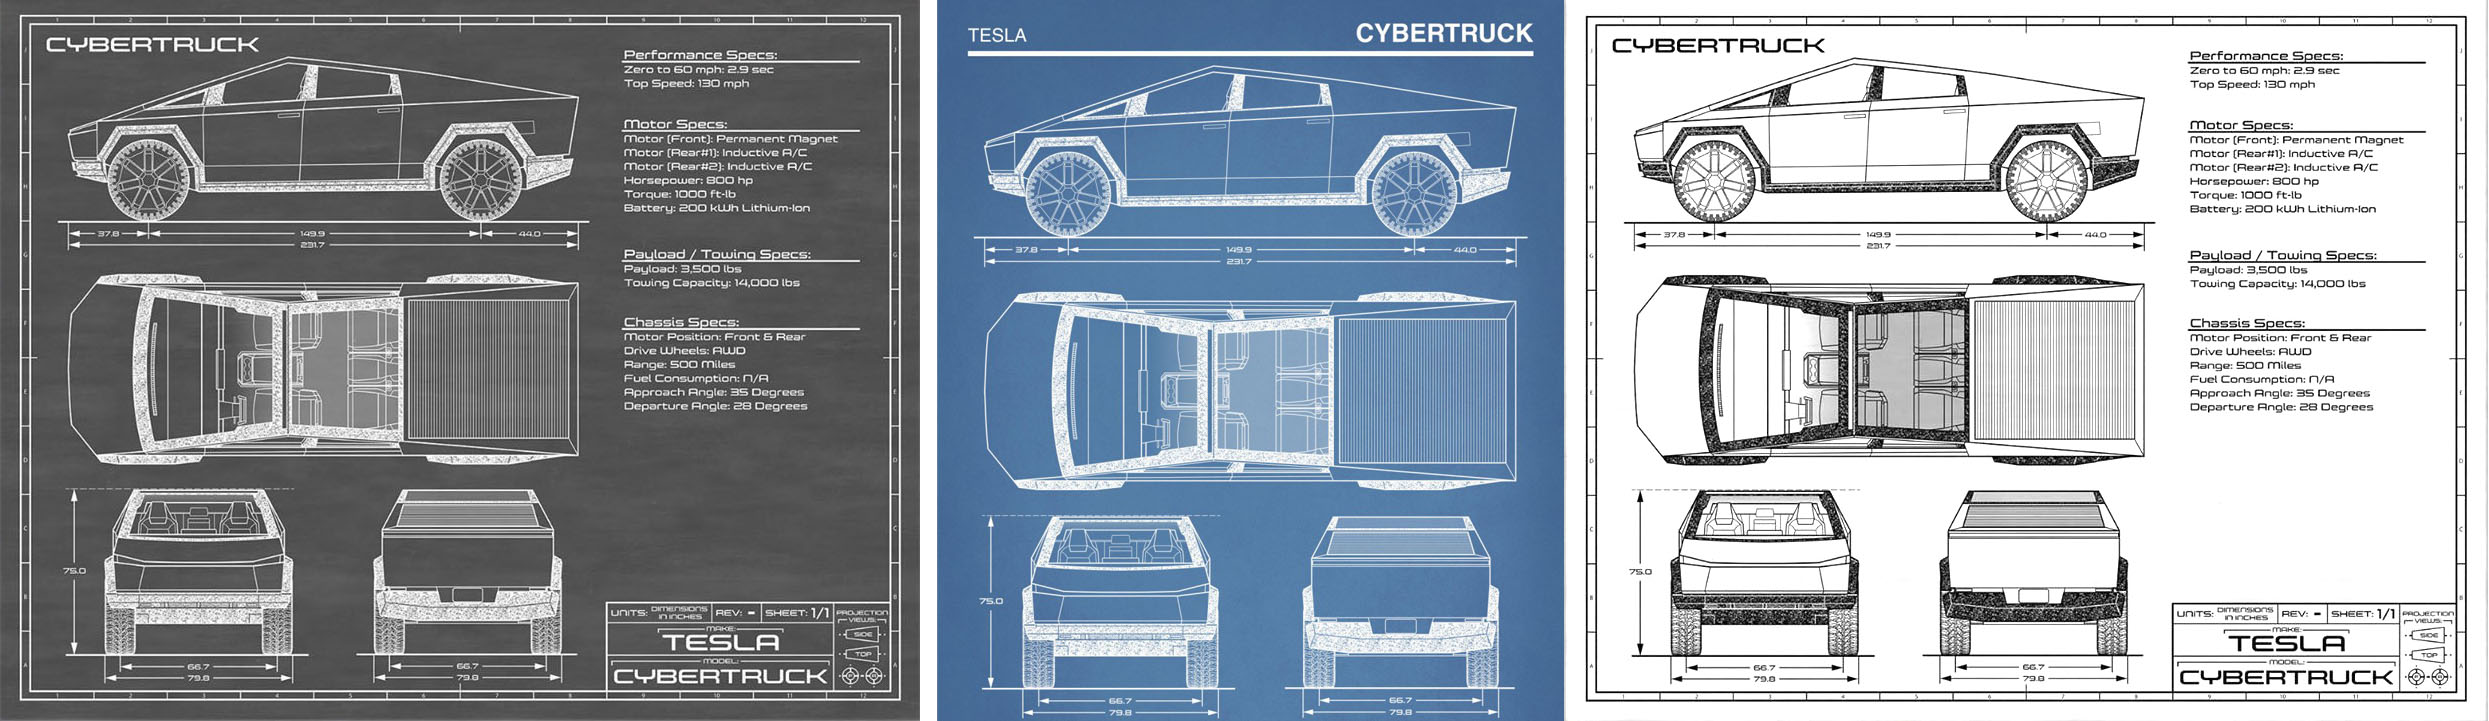 Cybertruck Concept Blueprint Art | Tesla Cybertruck Forum & Owners Club